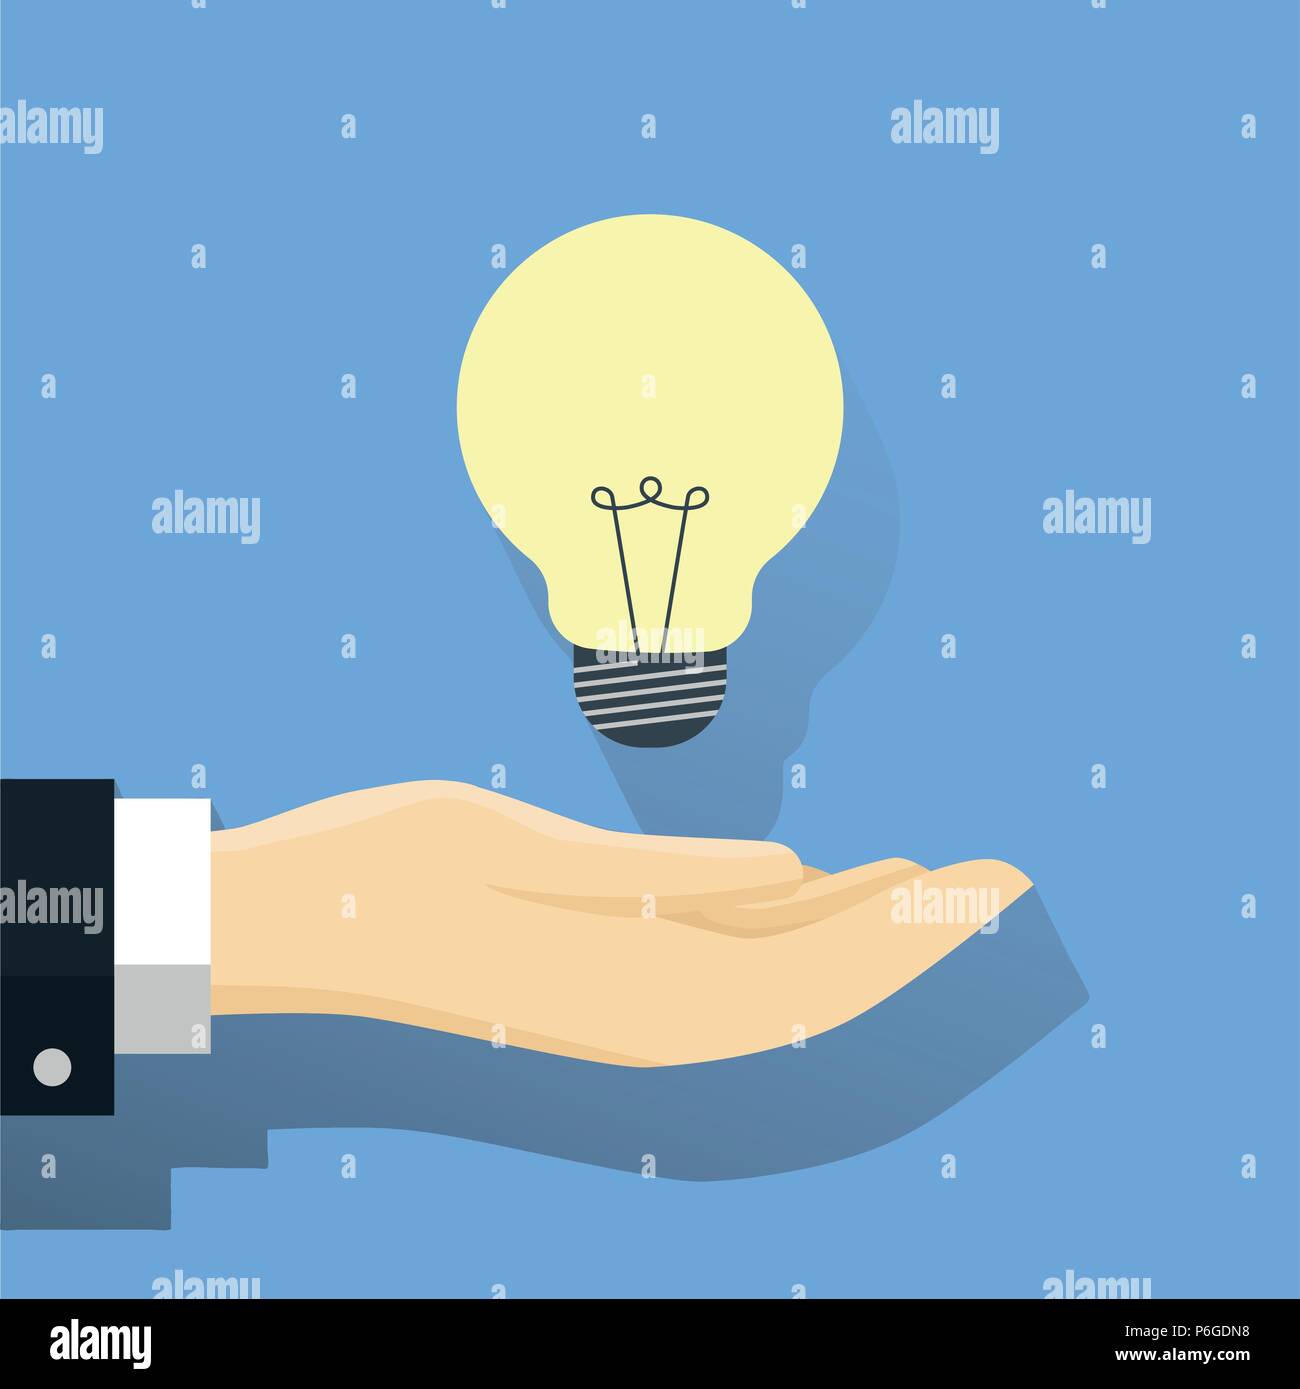 Geschäftsmann mit Glühbirne, eine Hand und eine Idee Glühbirne, moderne Idee innovation Glühbirne Konzept. Konzeptionelle web Illustration - Flachbild Vektor Illus Stock Vektor